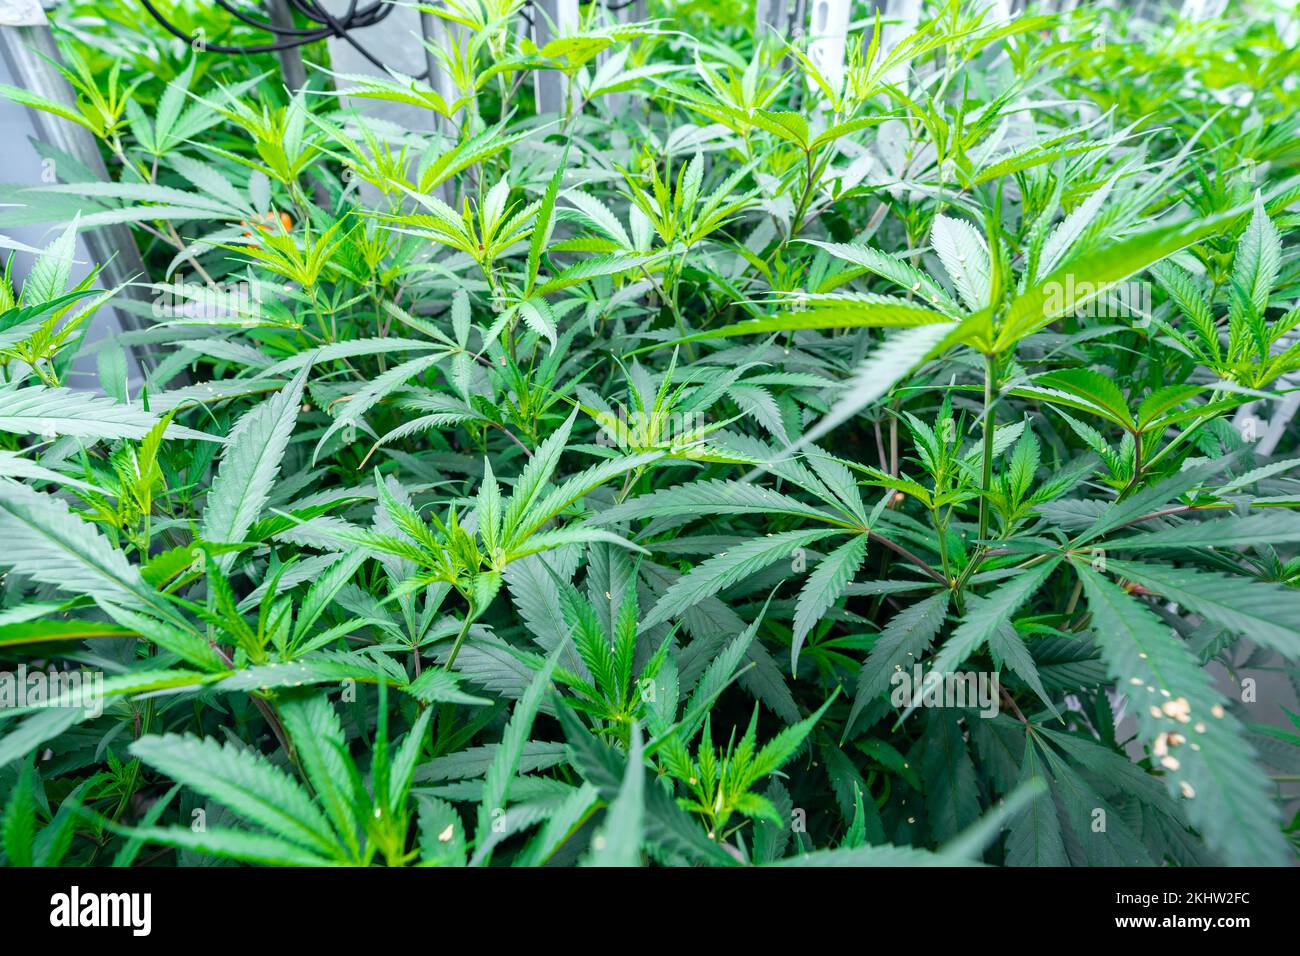 Cannabispflanzen reifen unter künstlichem Licht Stockfoto